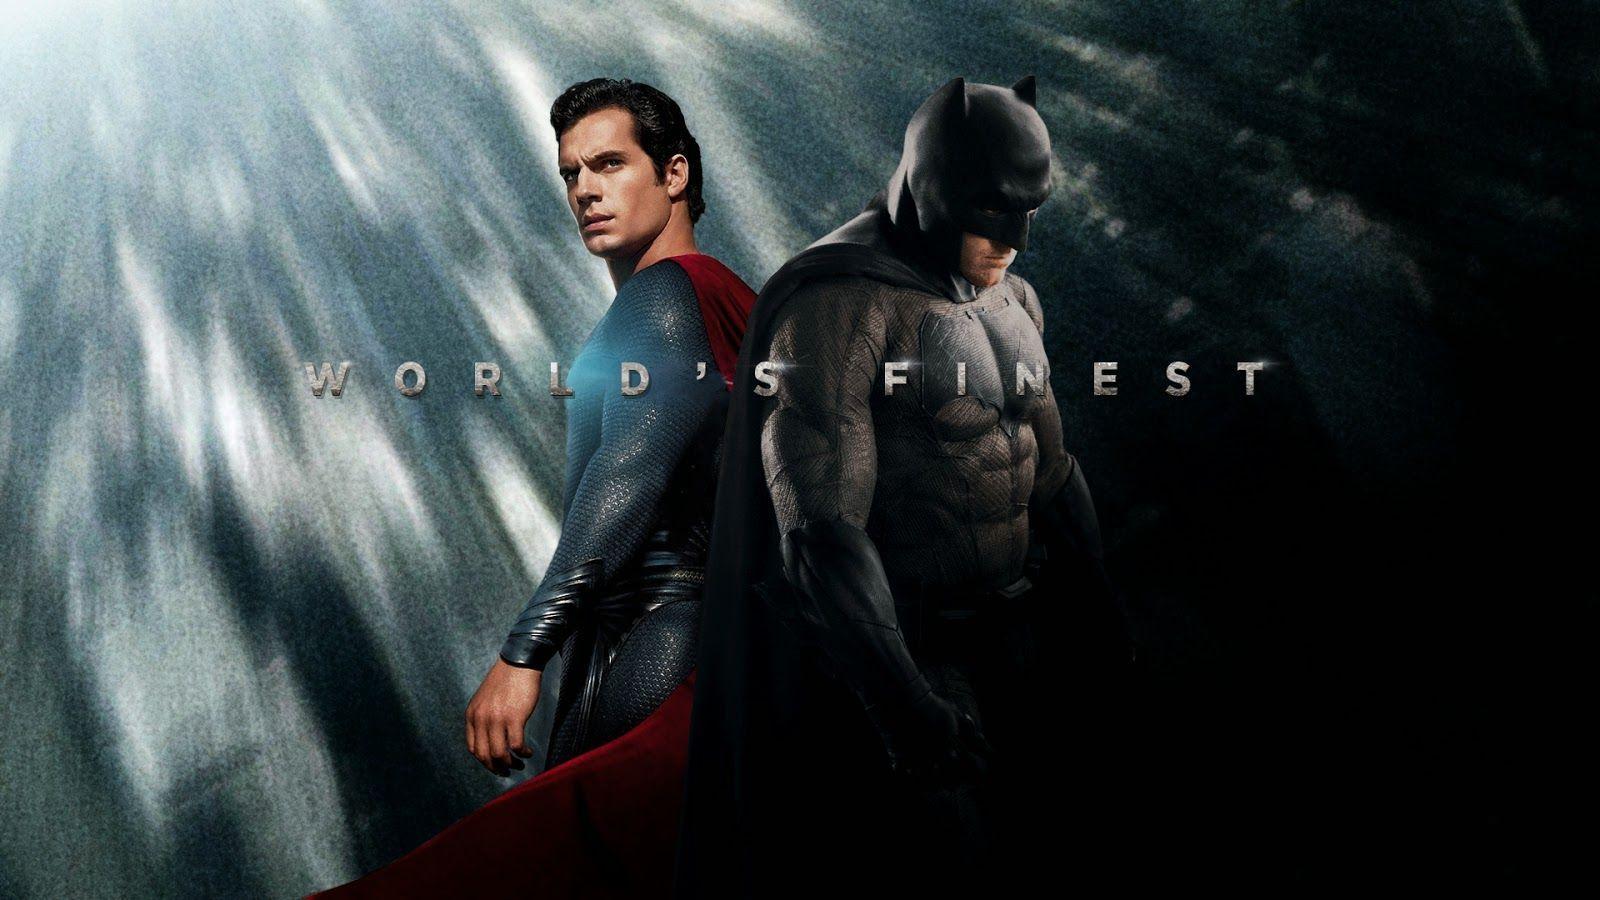 Batman vs Superman 1080p Wallpaper